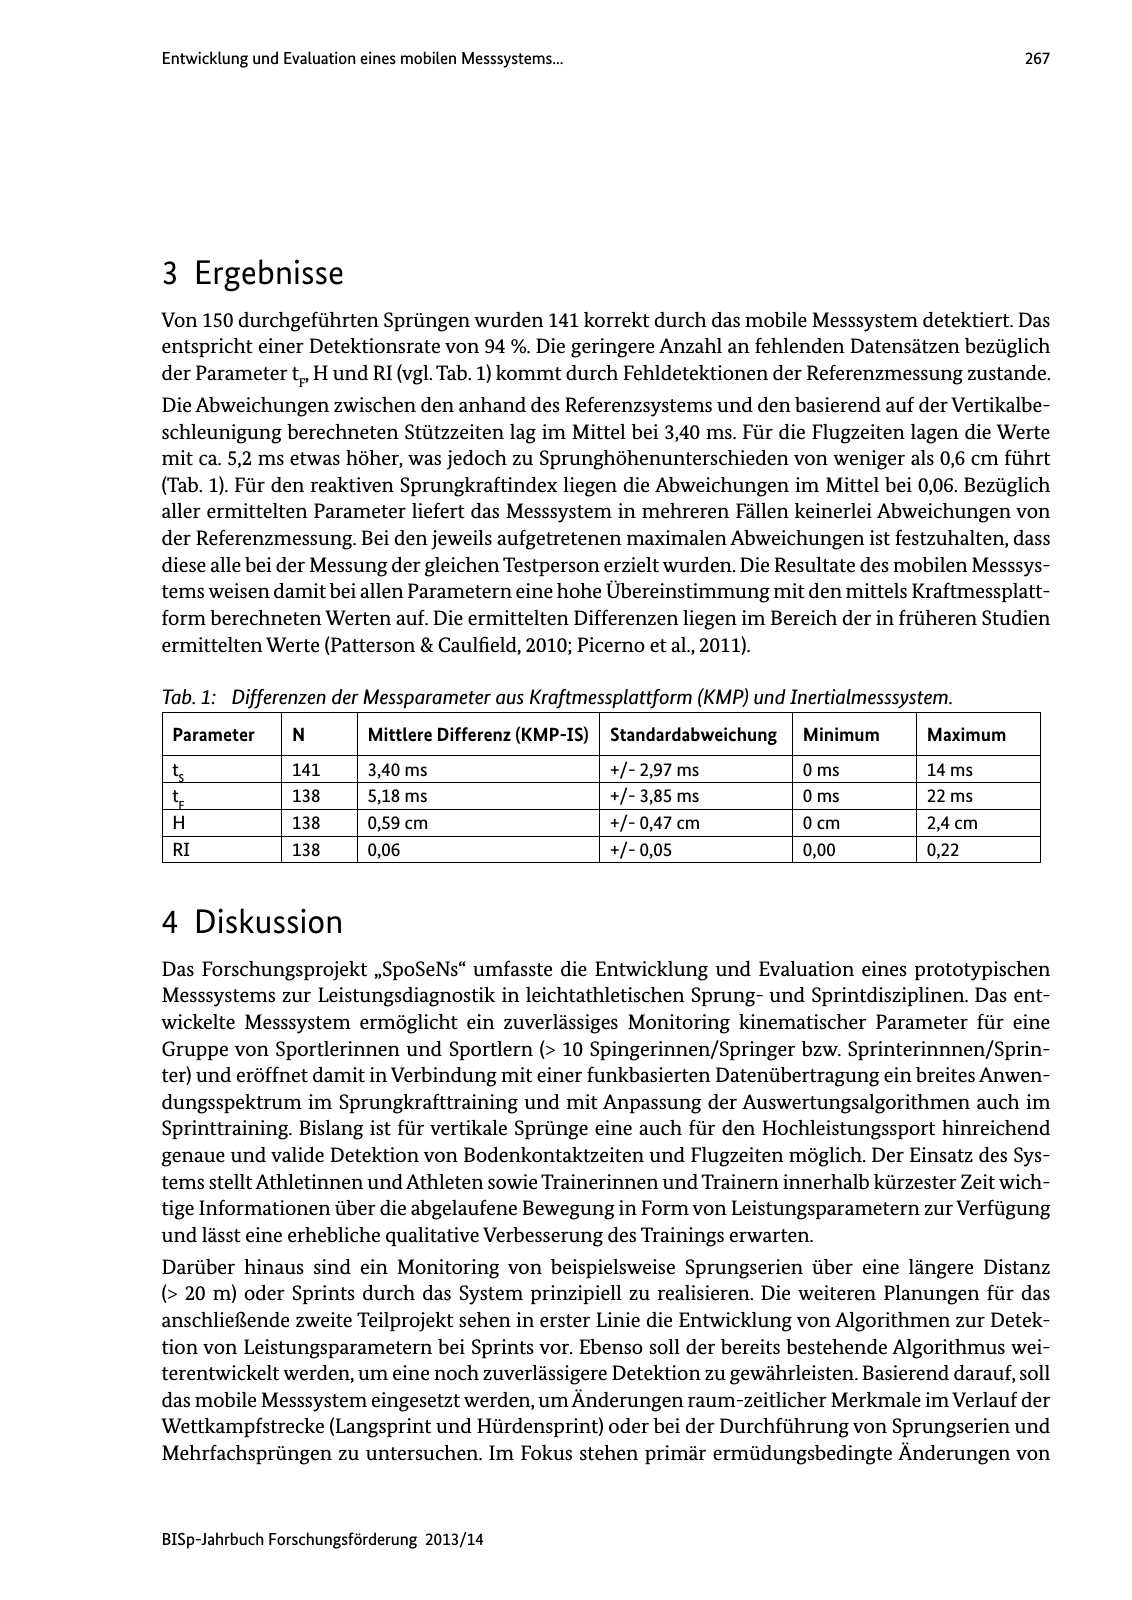 Vorschau BISp-Jahrbuch Forschungsförderung 2013/14 Seite 268